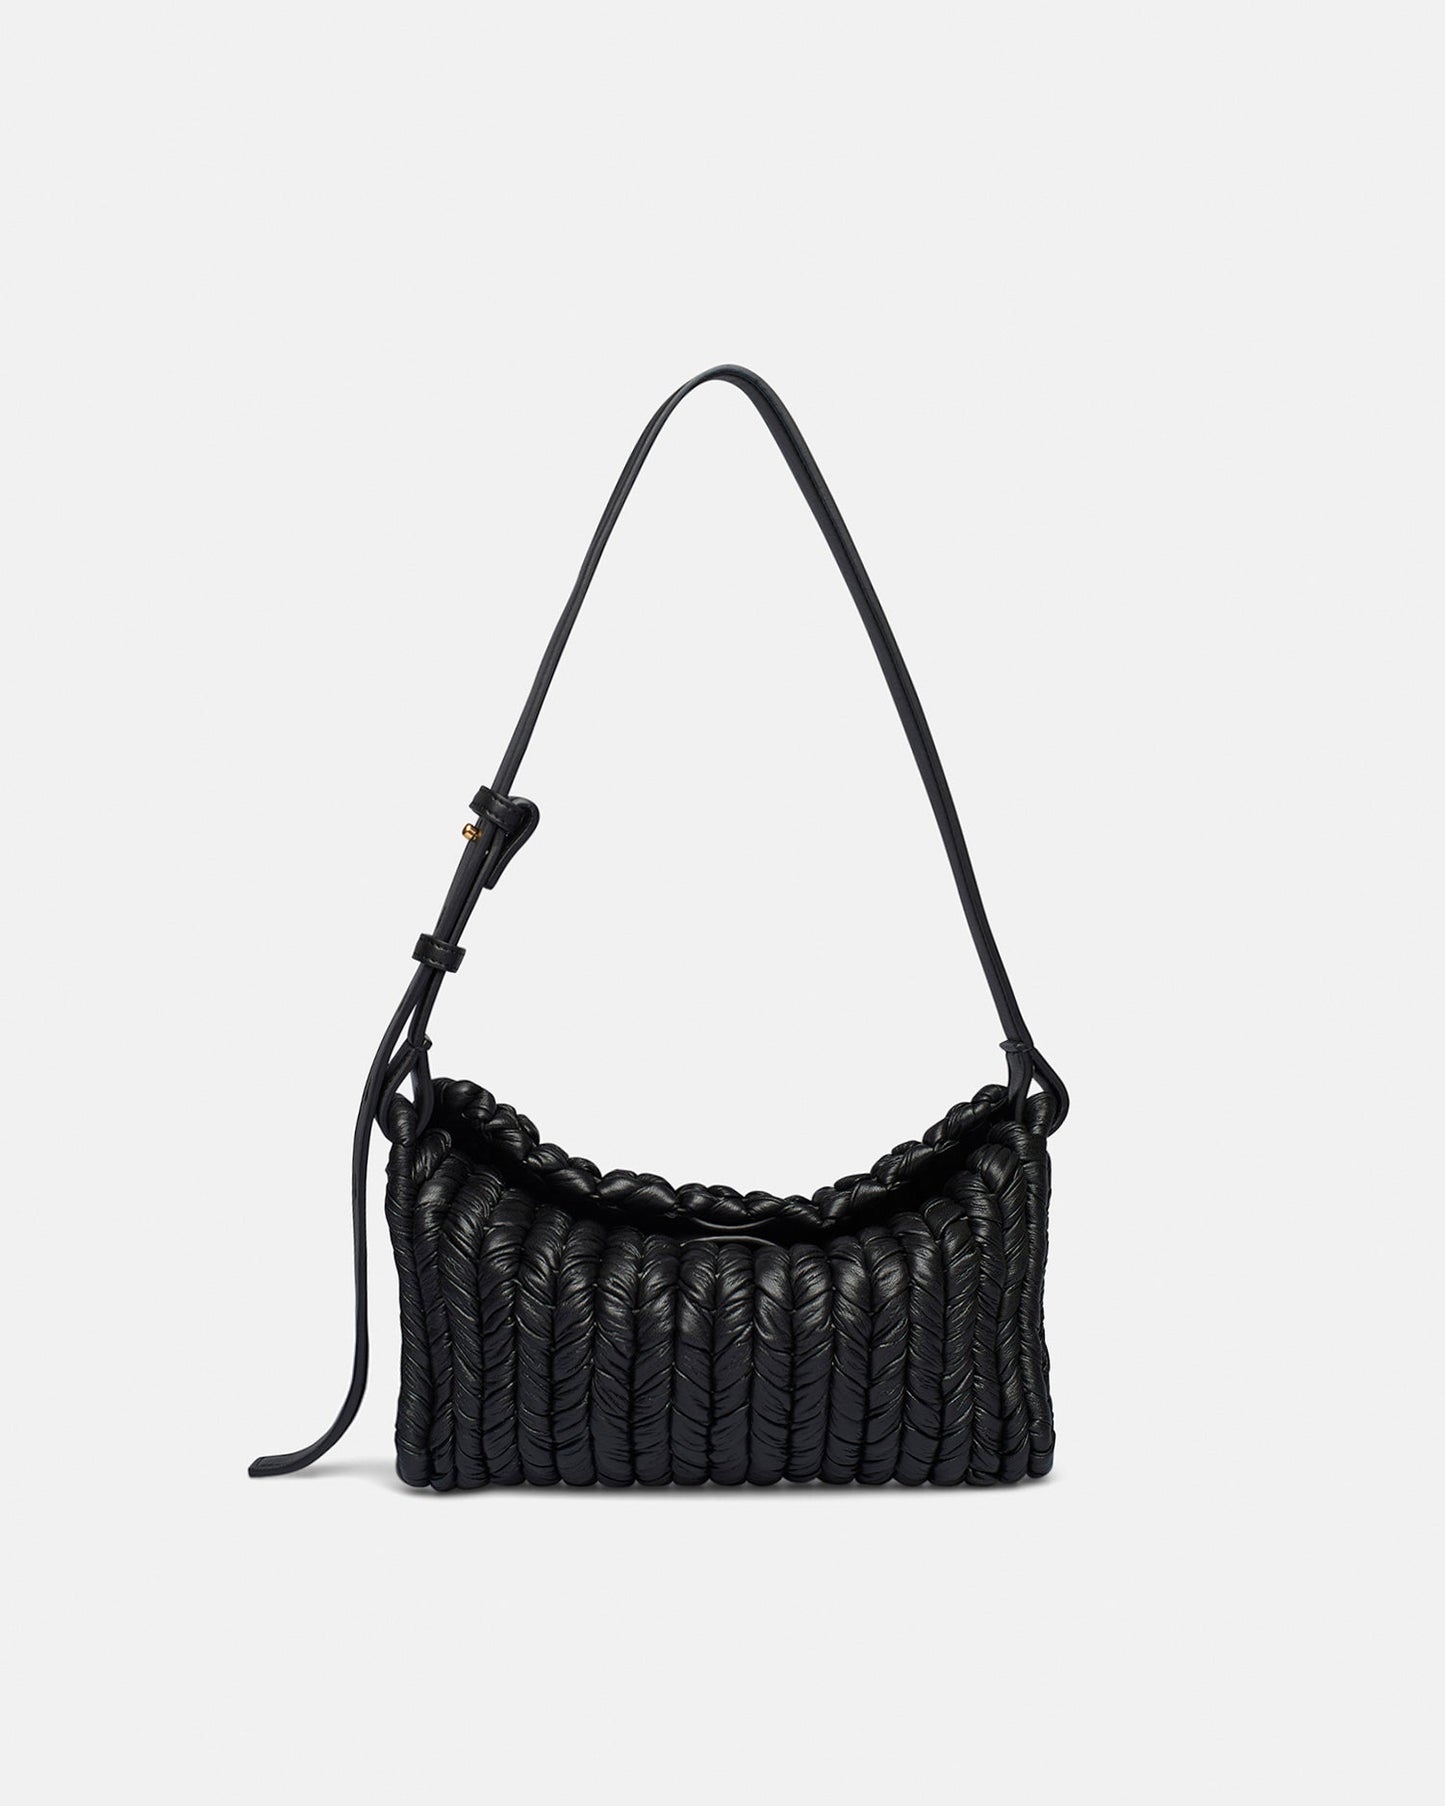 The Busket Bag - Knit Shoulder Bag - Black